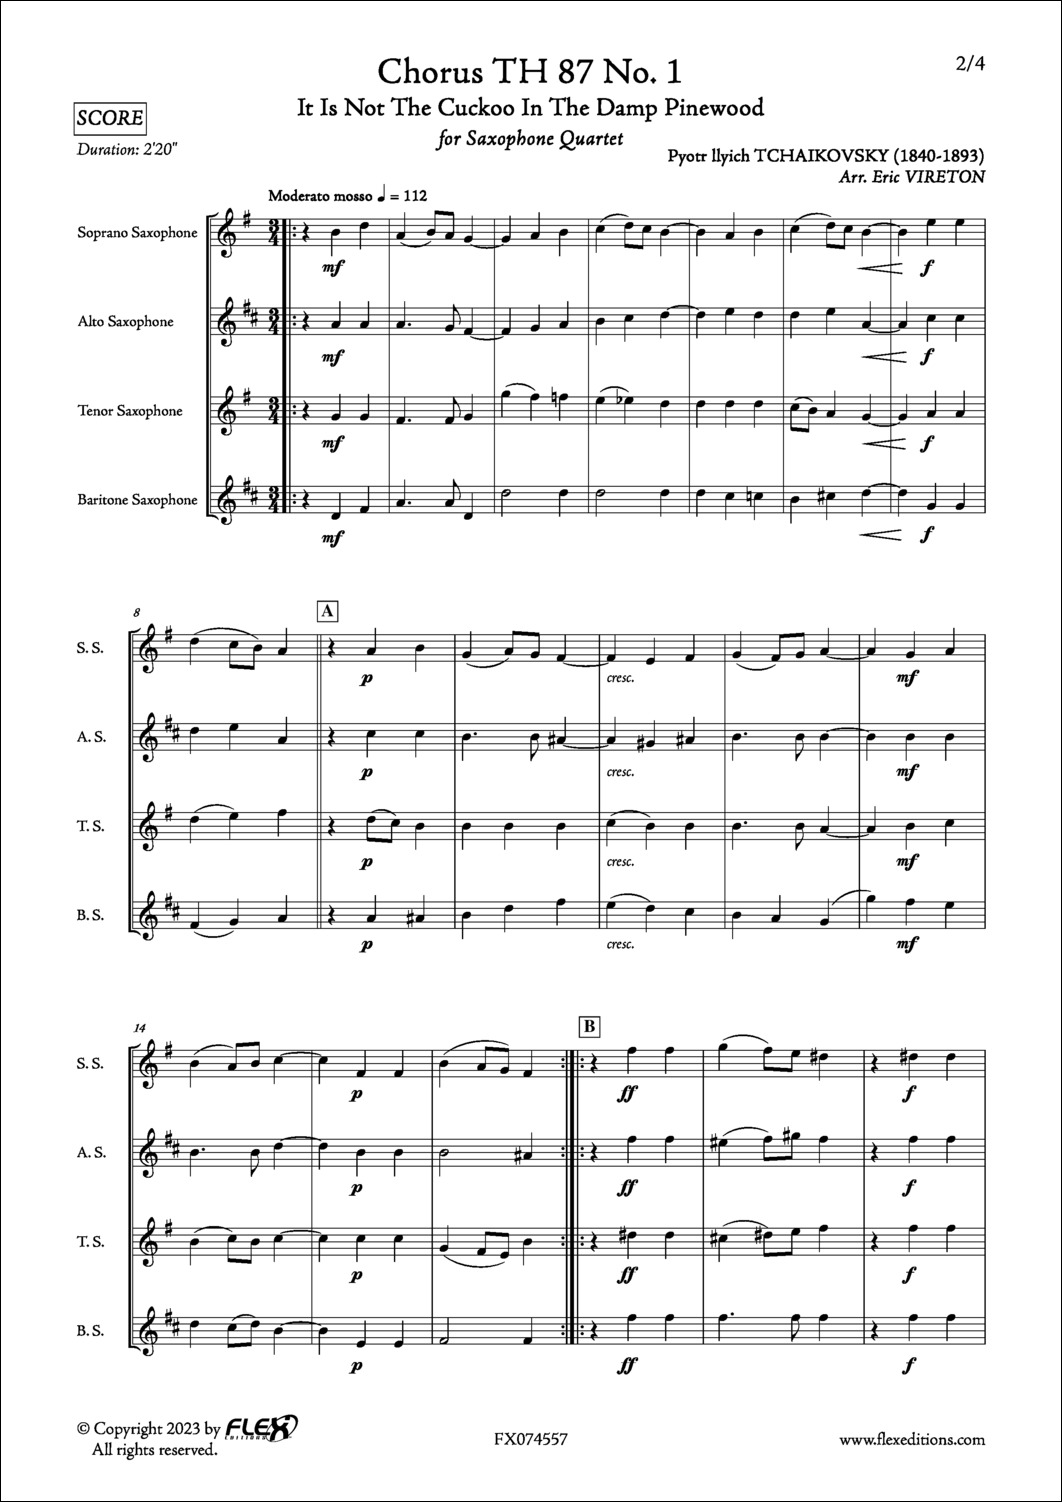 Choeur TH 87 No. 1 - P. I. TCHAIKOVSKY - <font color=#666666>Quatuor de Saxophones</font>